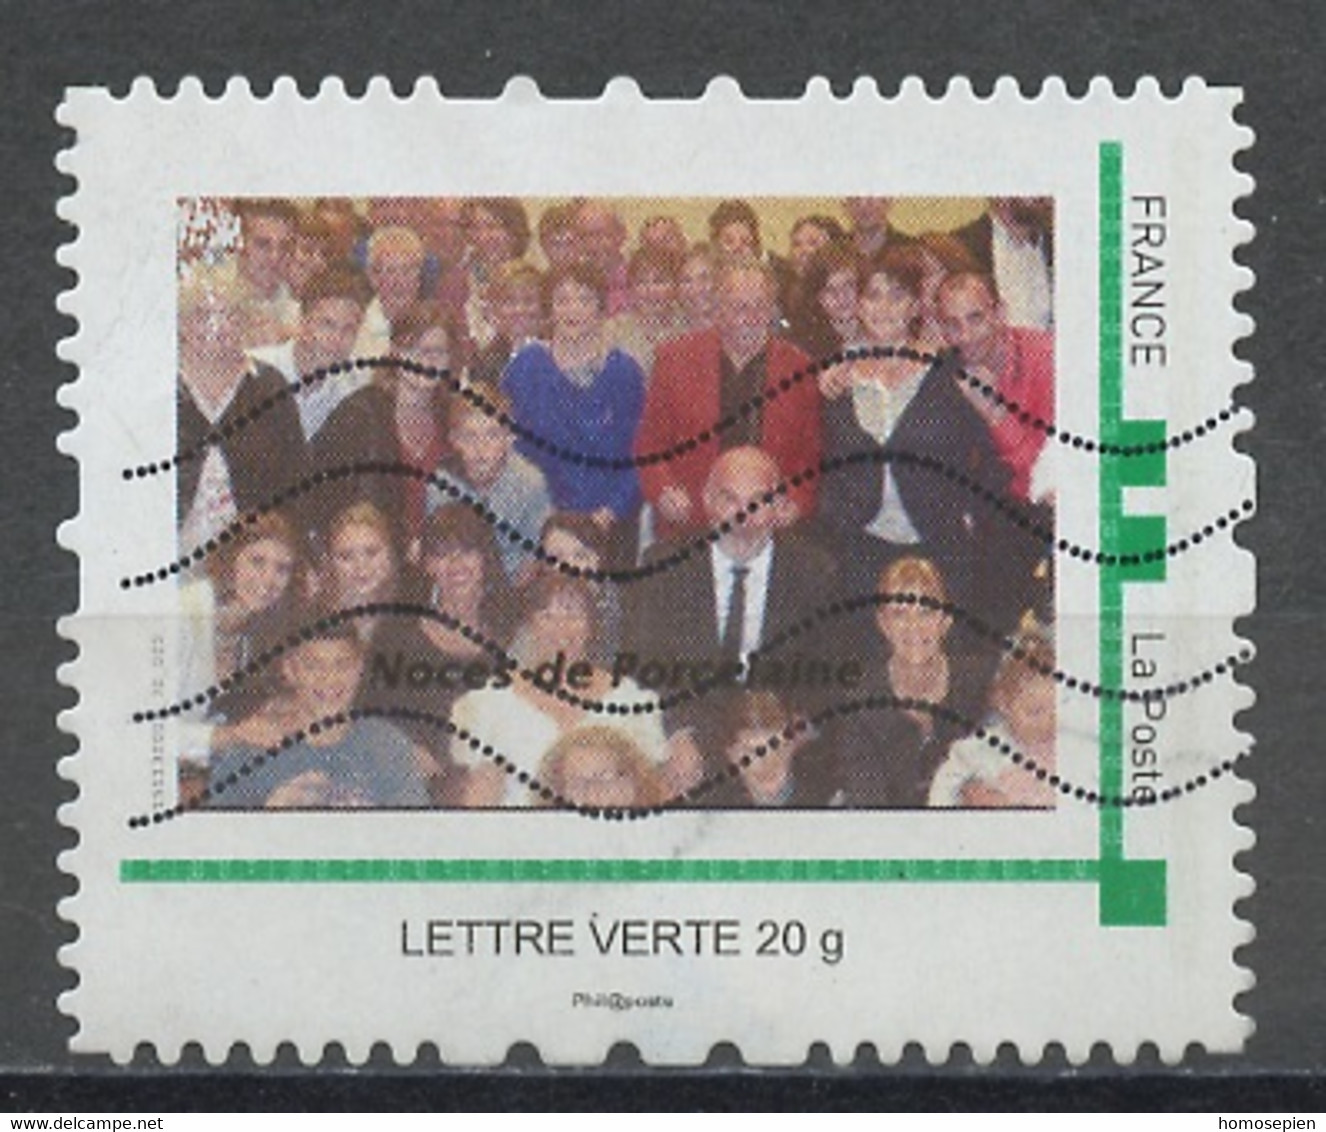 France - Frankreich Timbre Personnalisé 2010 Y&T N°MTAM67-006 - Michel N°BS(?) (o) - Noces De Porcelaine - Used Stamps